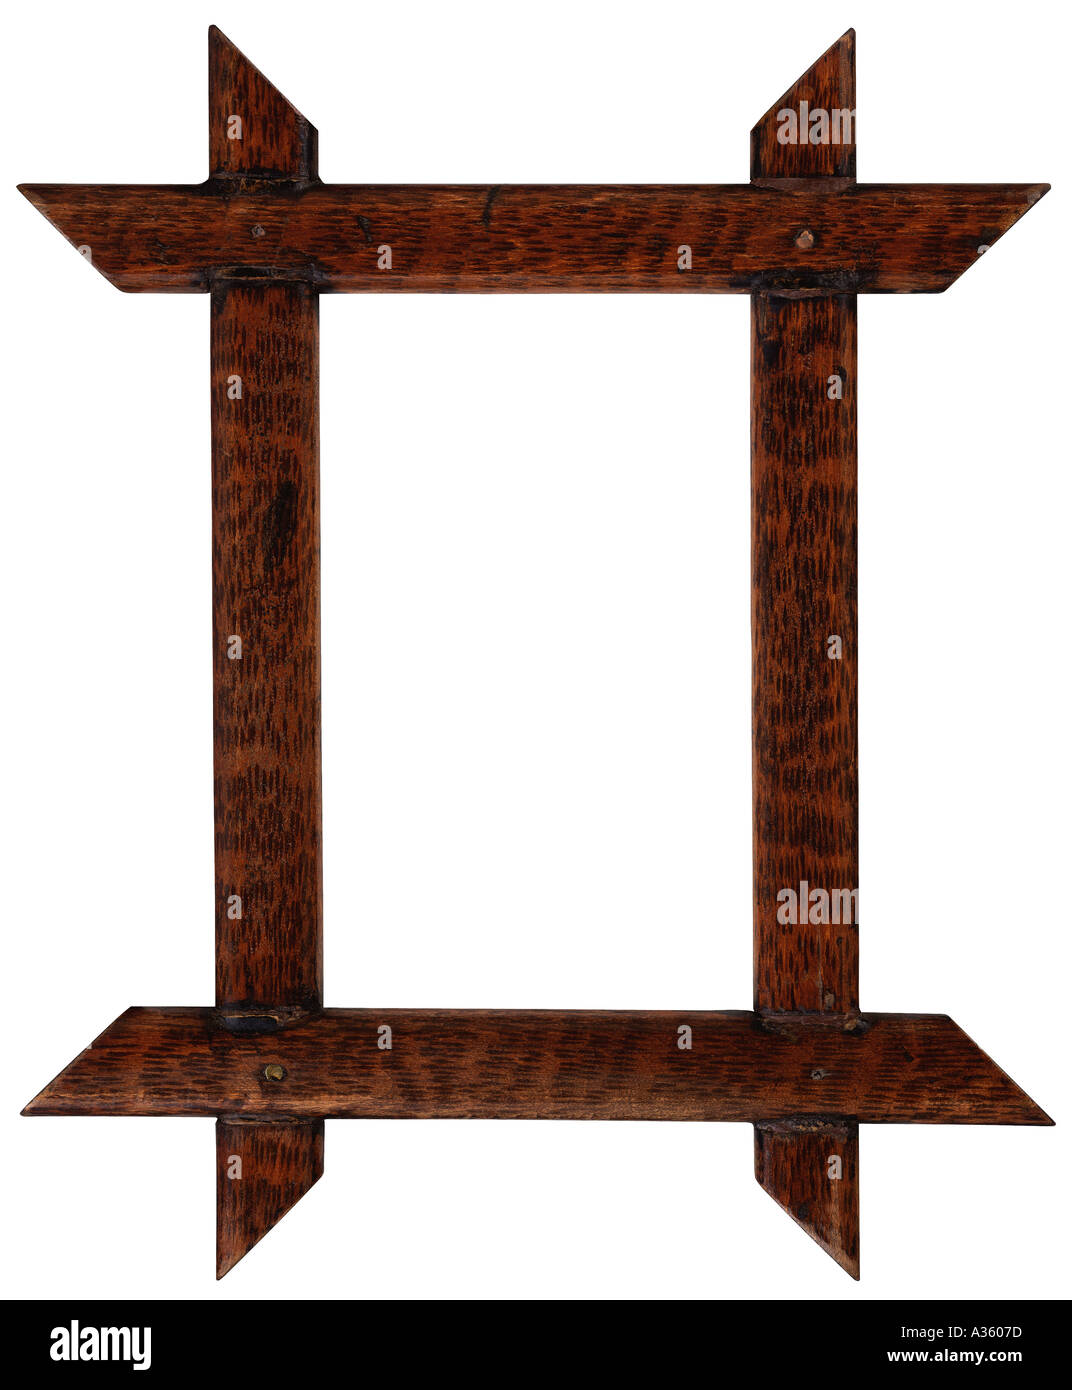 Un bastidor de madera decorativa rectangular vertical de cuatro piezas de madera de color oscuro se superponen en las esquinas. Foto de stock